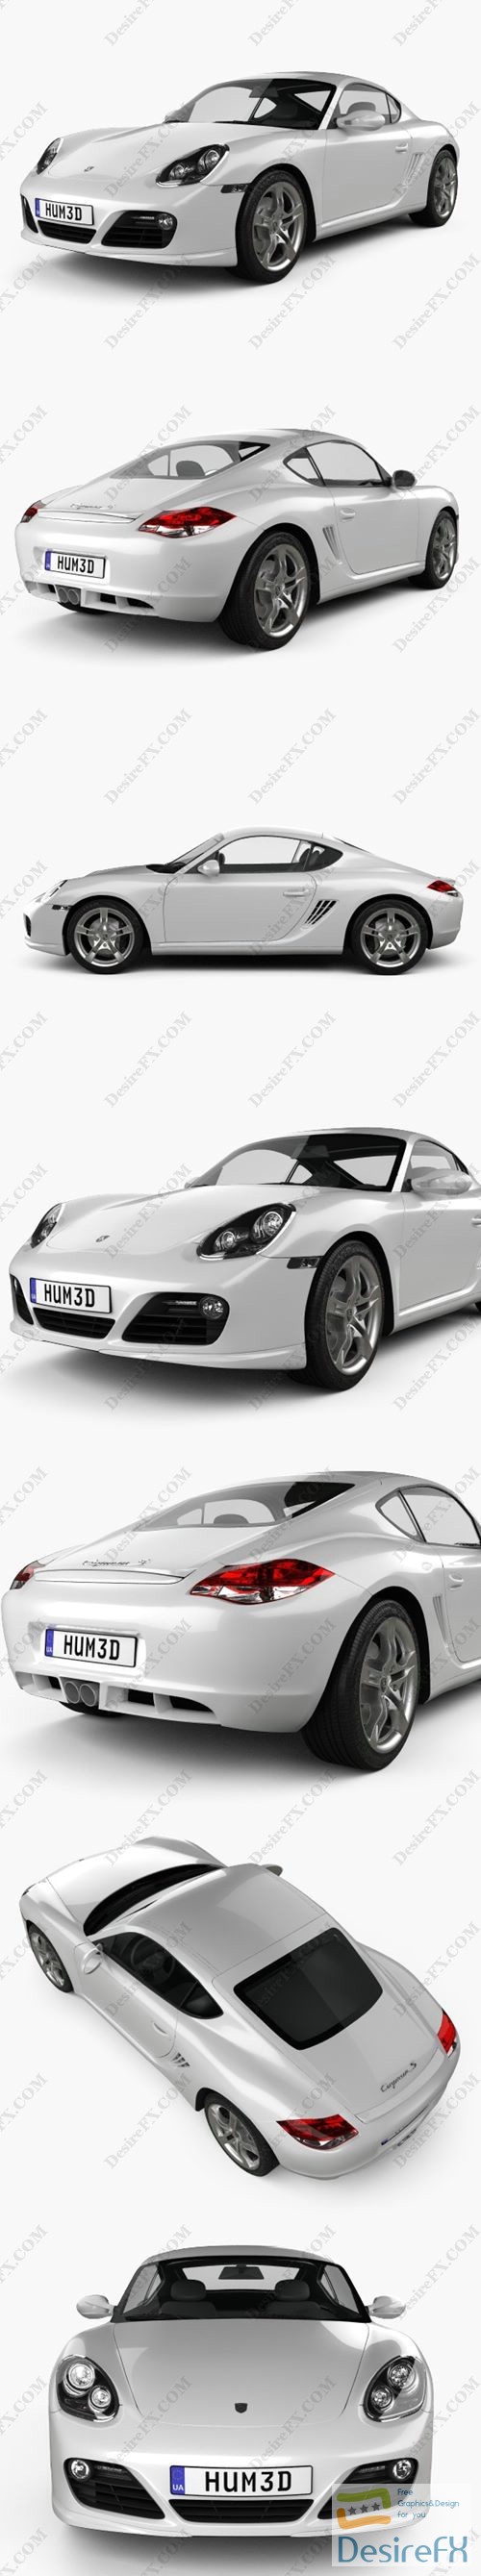 Porsche Cayman S 2011 3D Model